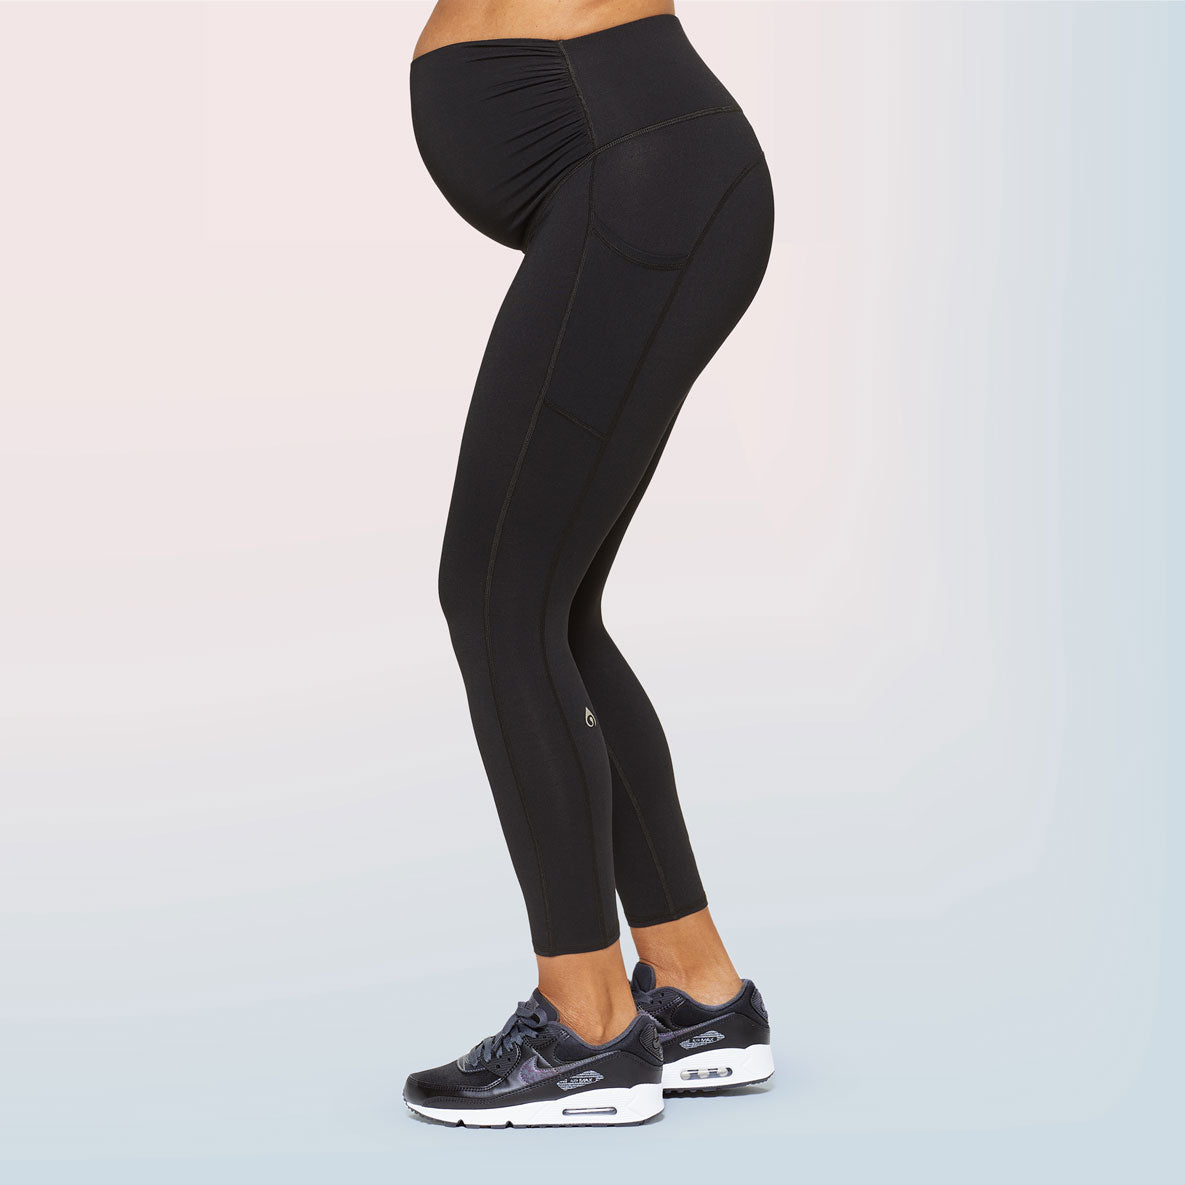 Sonoma Goods for Life Black Gray Leggings Size M (Maternity) - 36% off